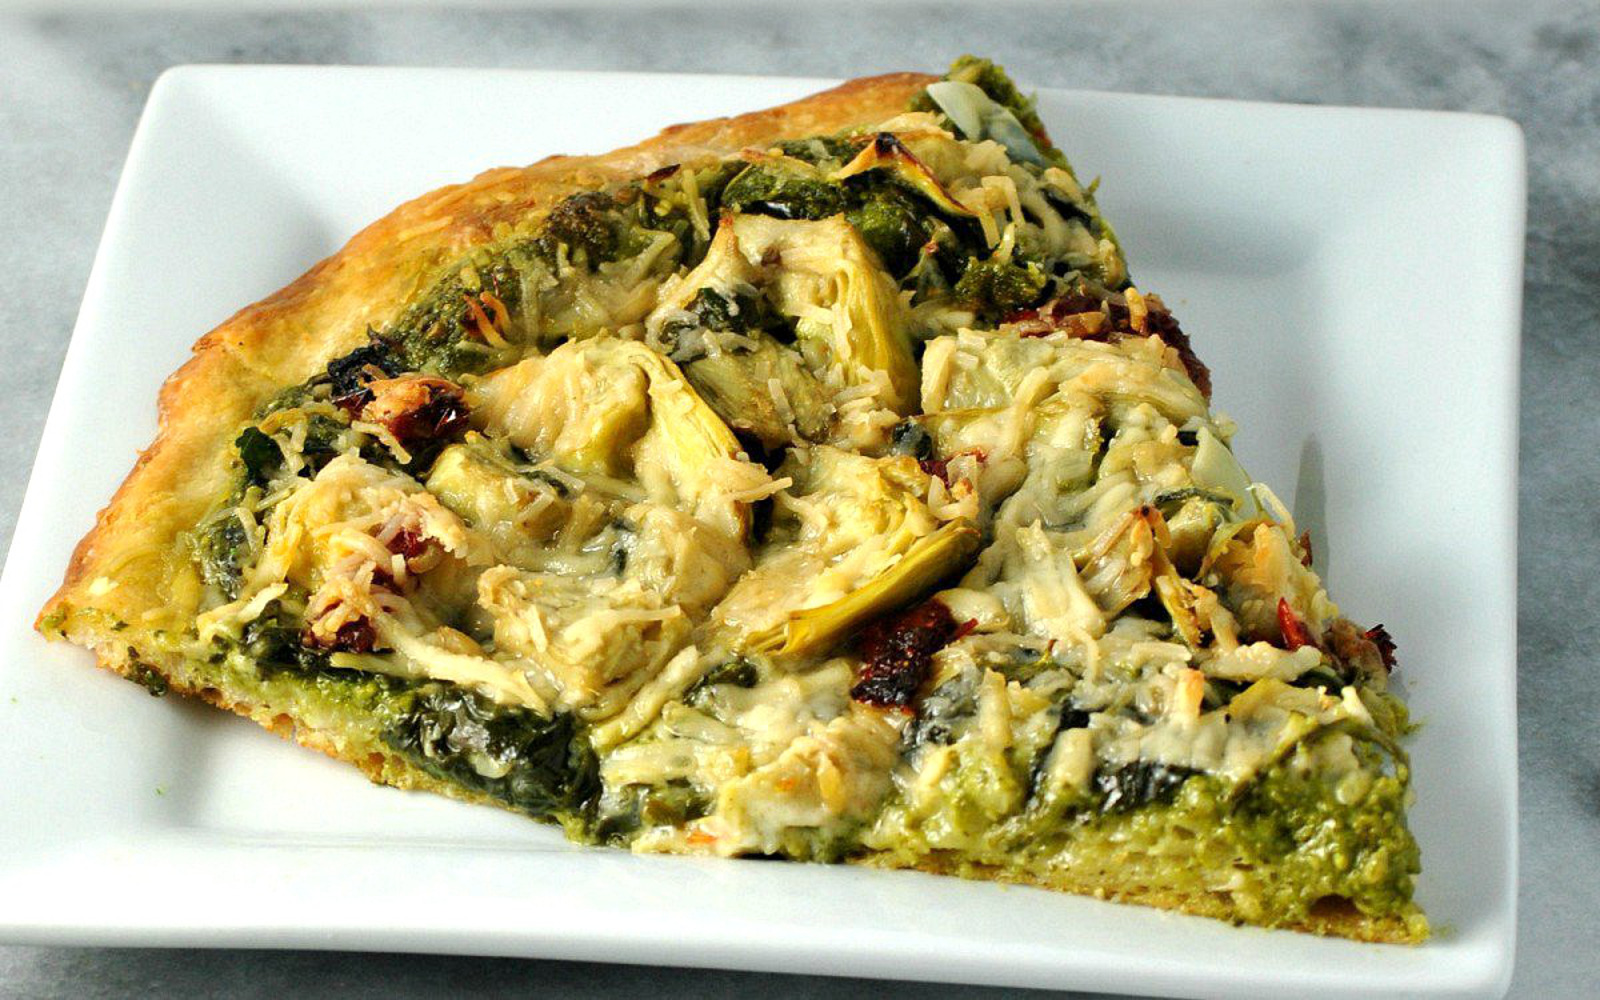 spinach and artichoke pizza